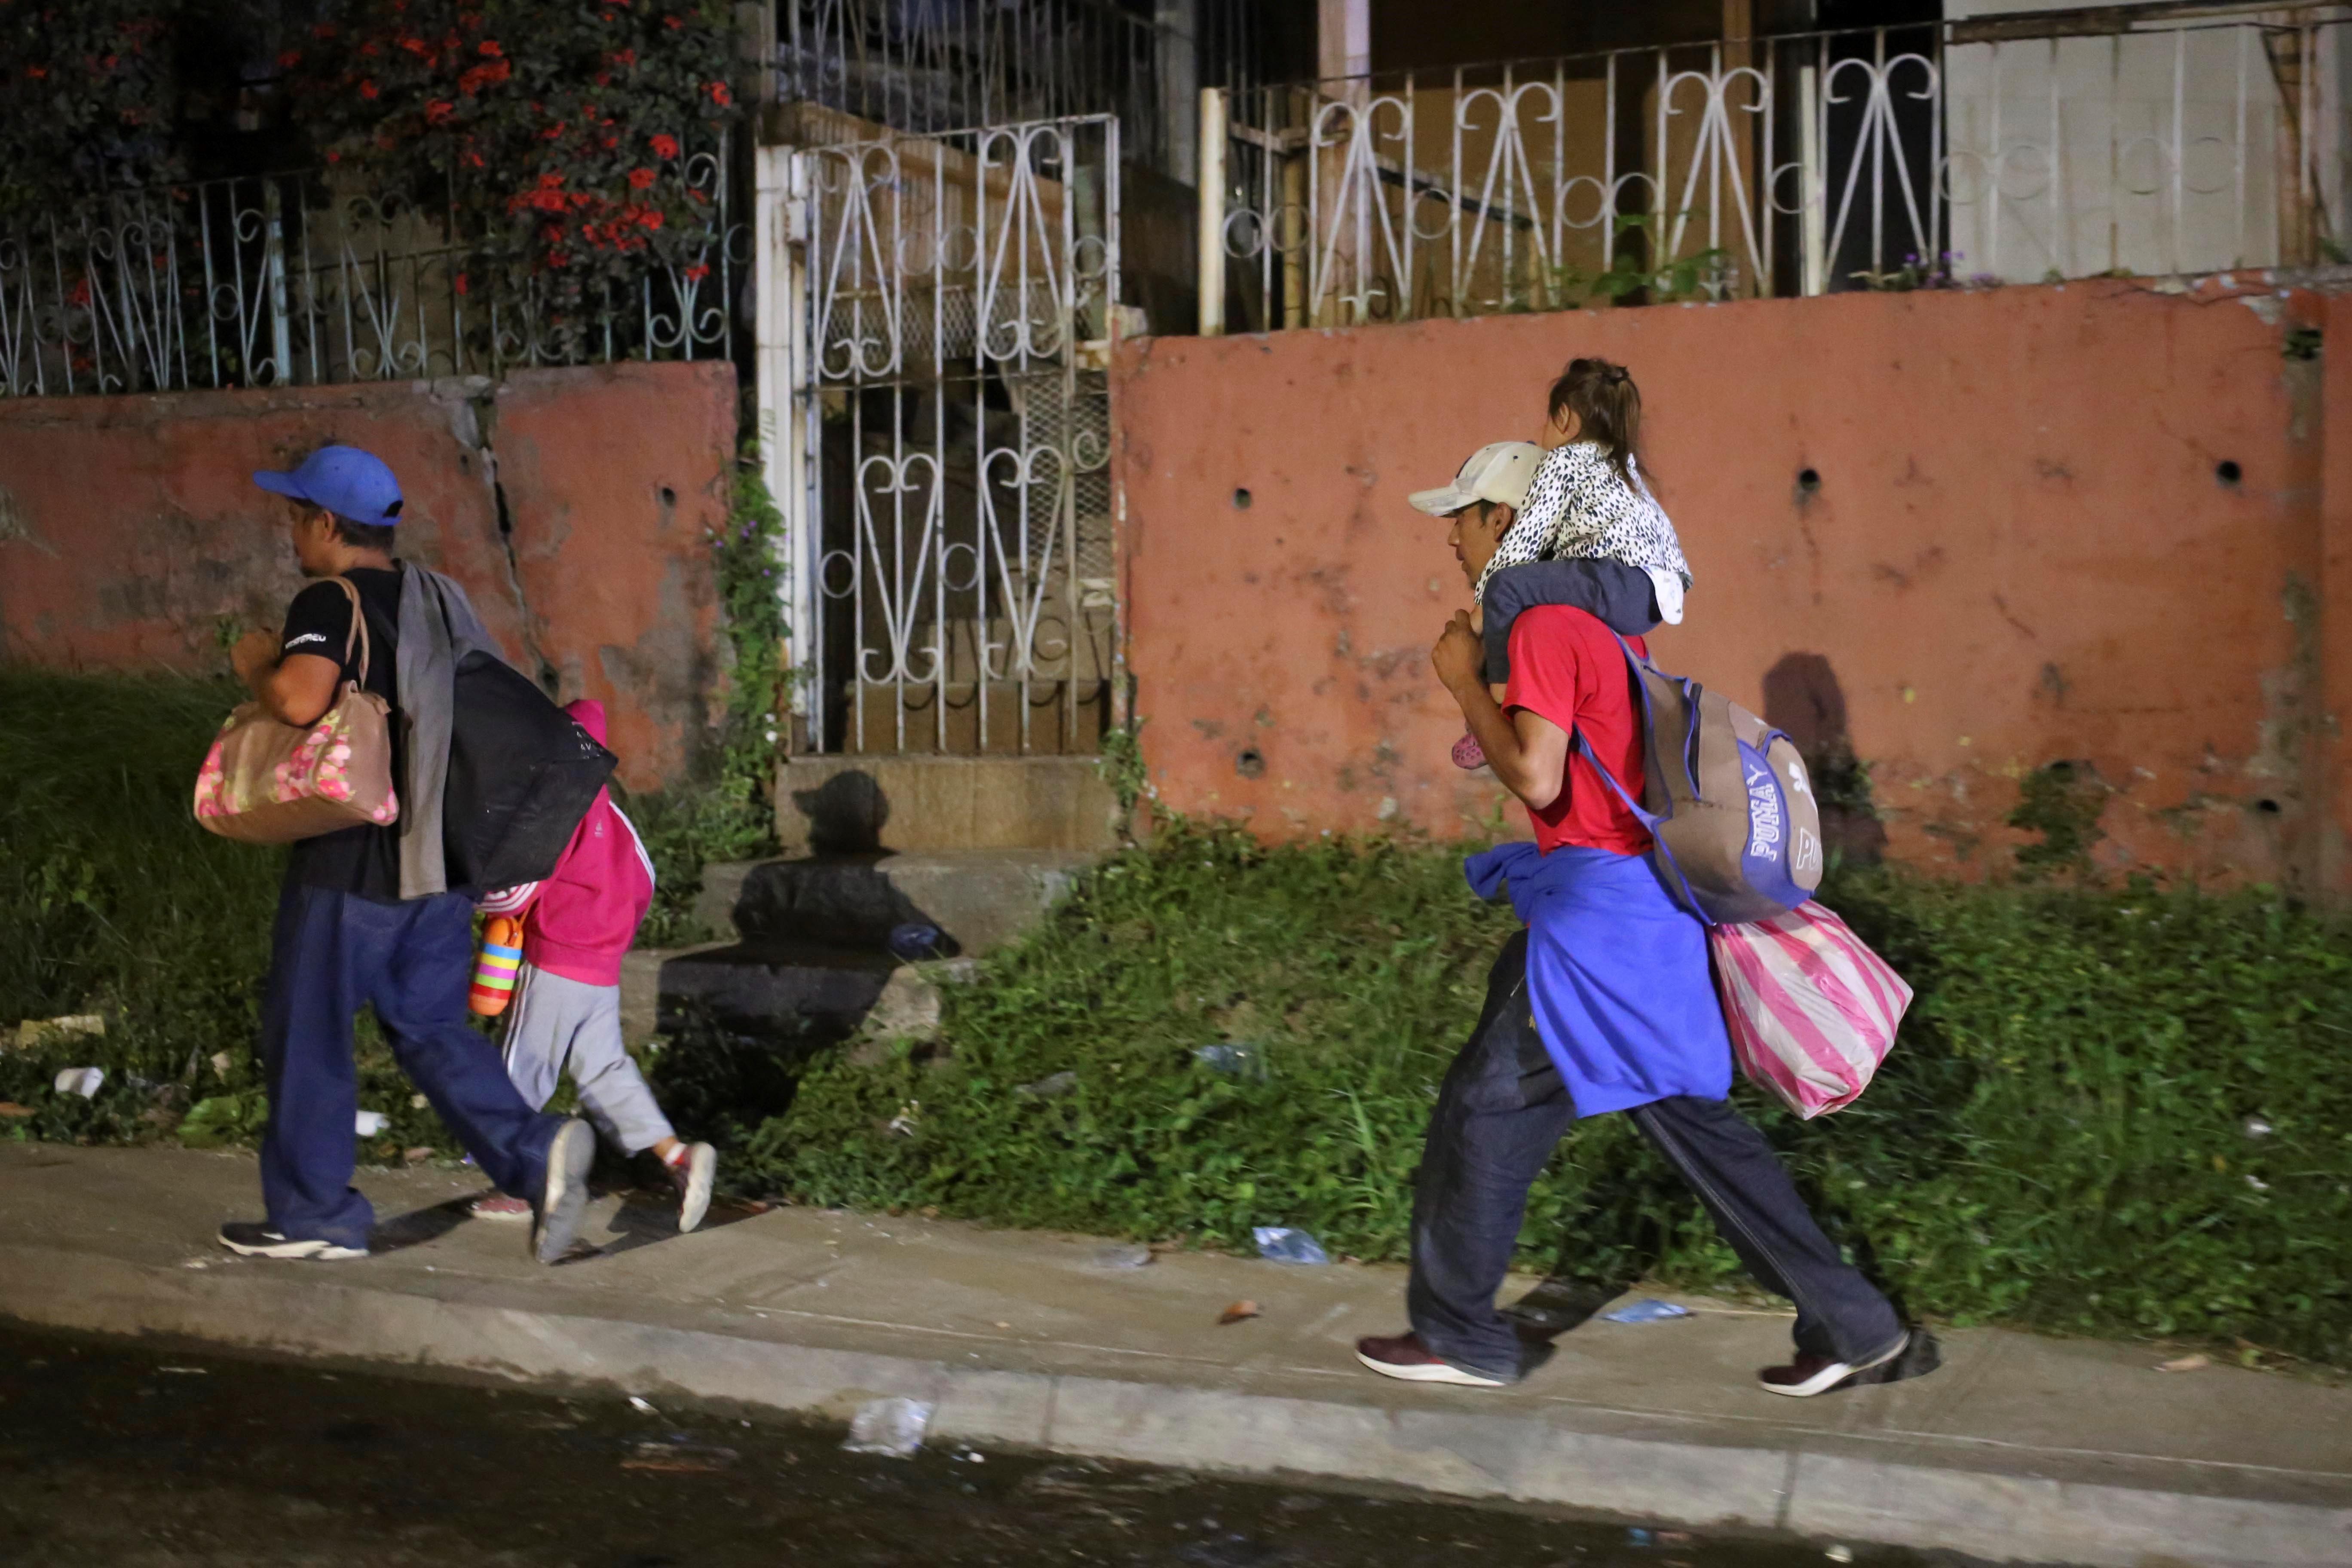 Cientos de niños viajan acompañados por sus padres hacia EE. UU., un problema que intentan mitigar las autoridades. (Foto Prensa Libre: EFE)